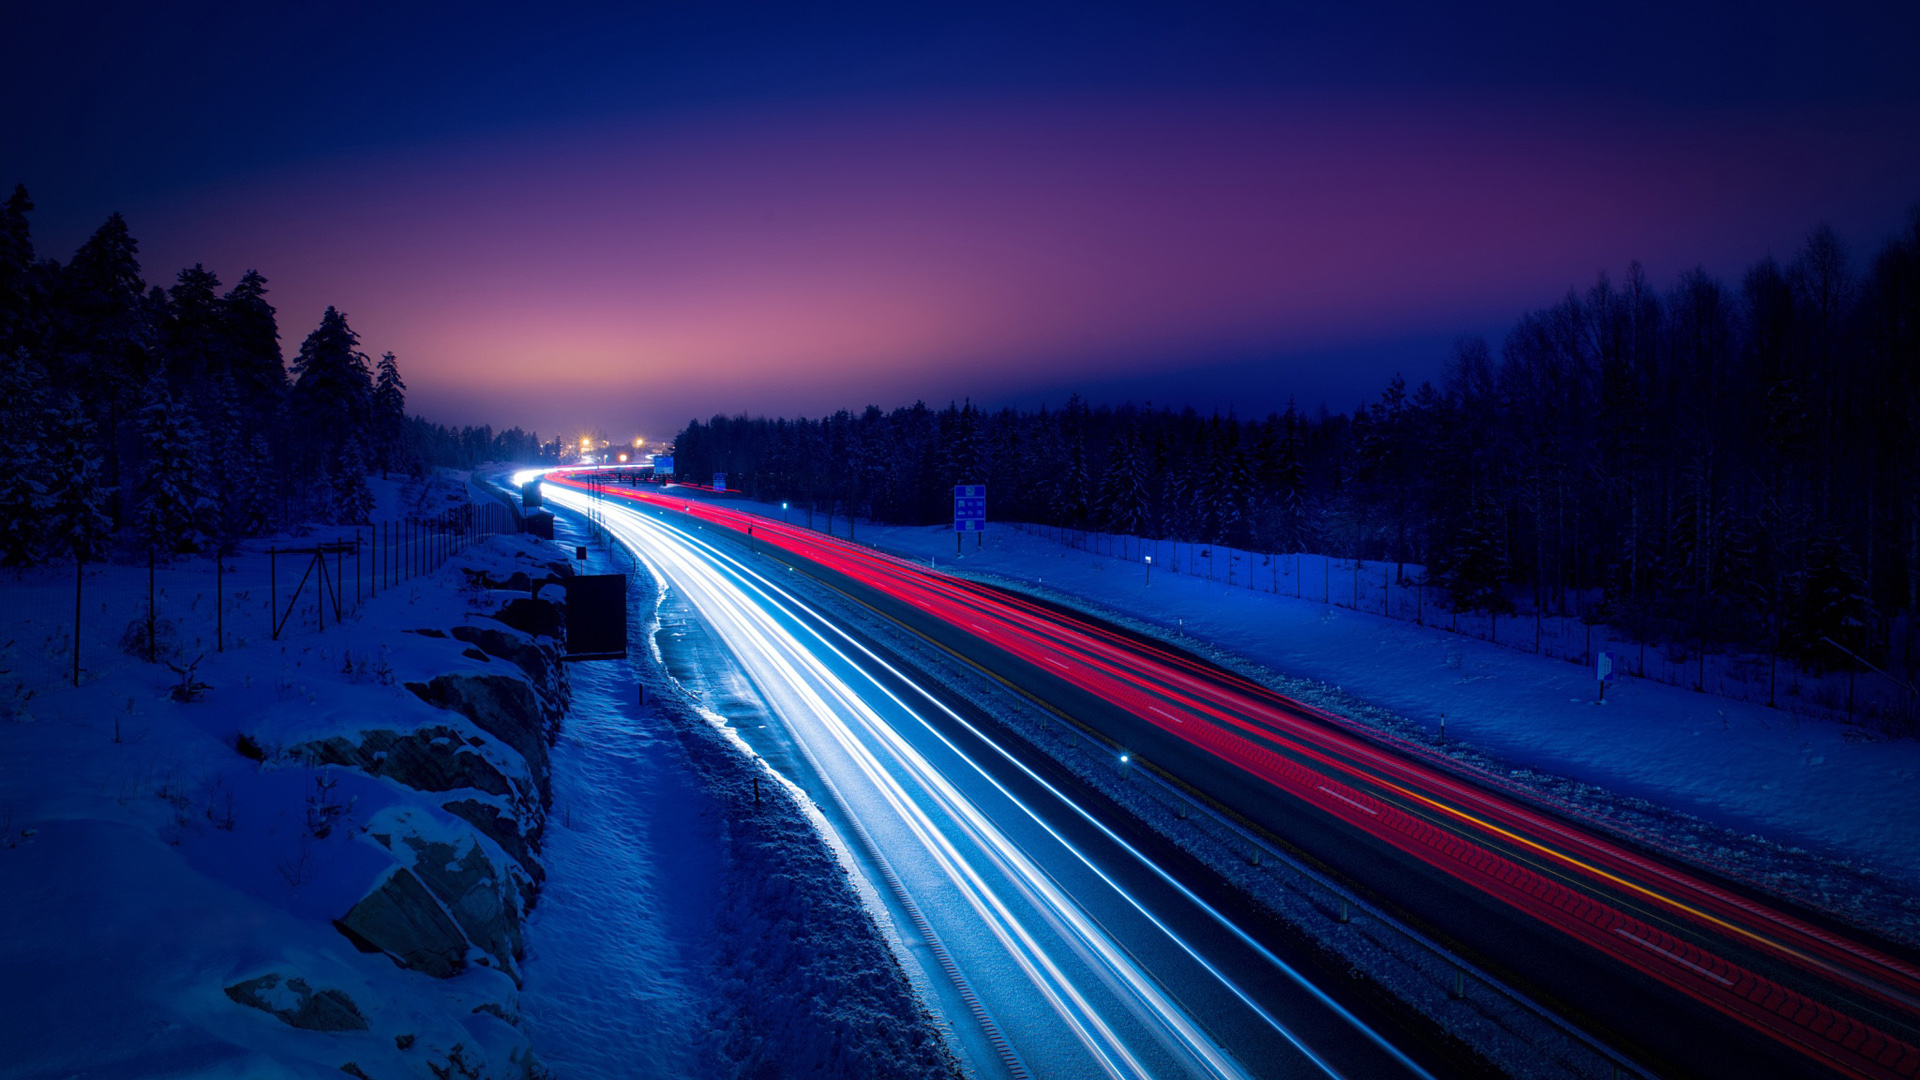 冬天,晚上,雪,灯,道路风景桌面壁纸